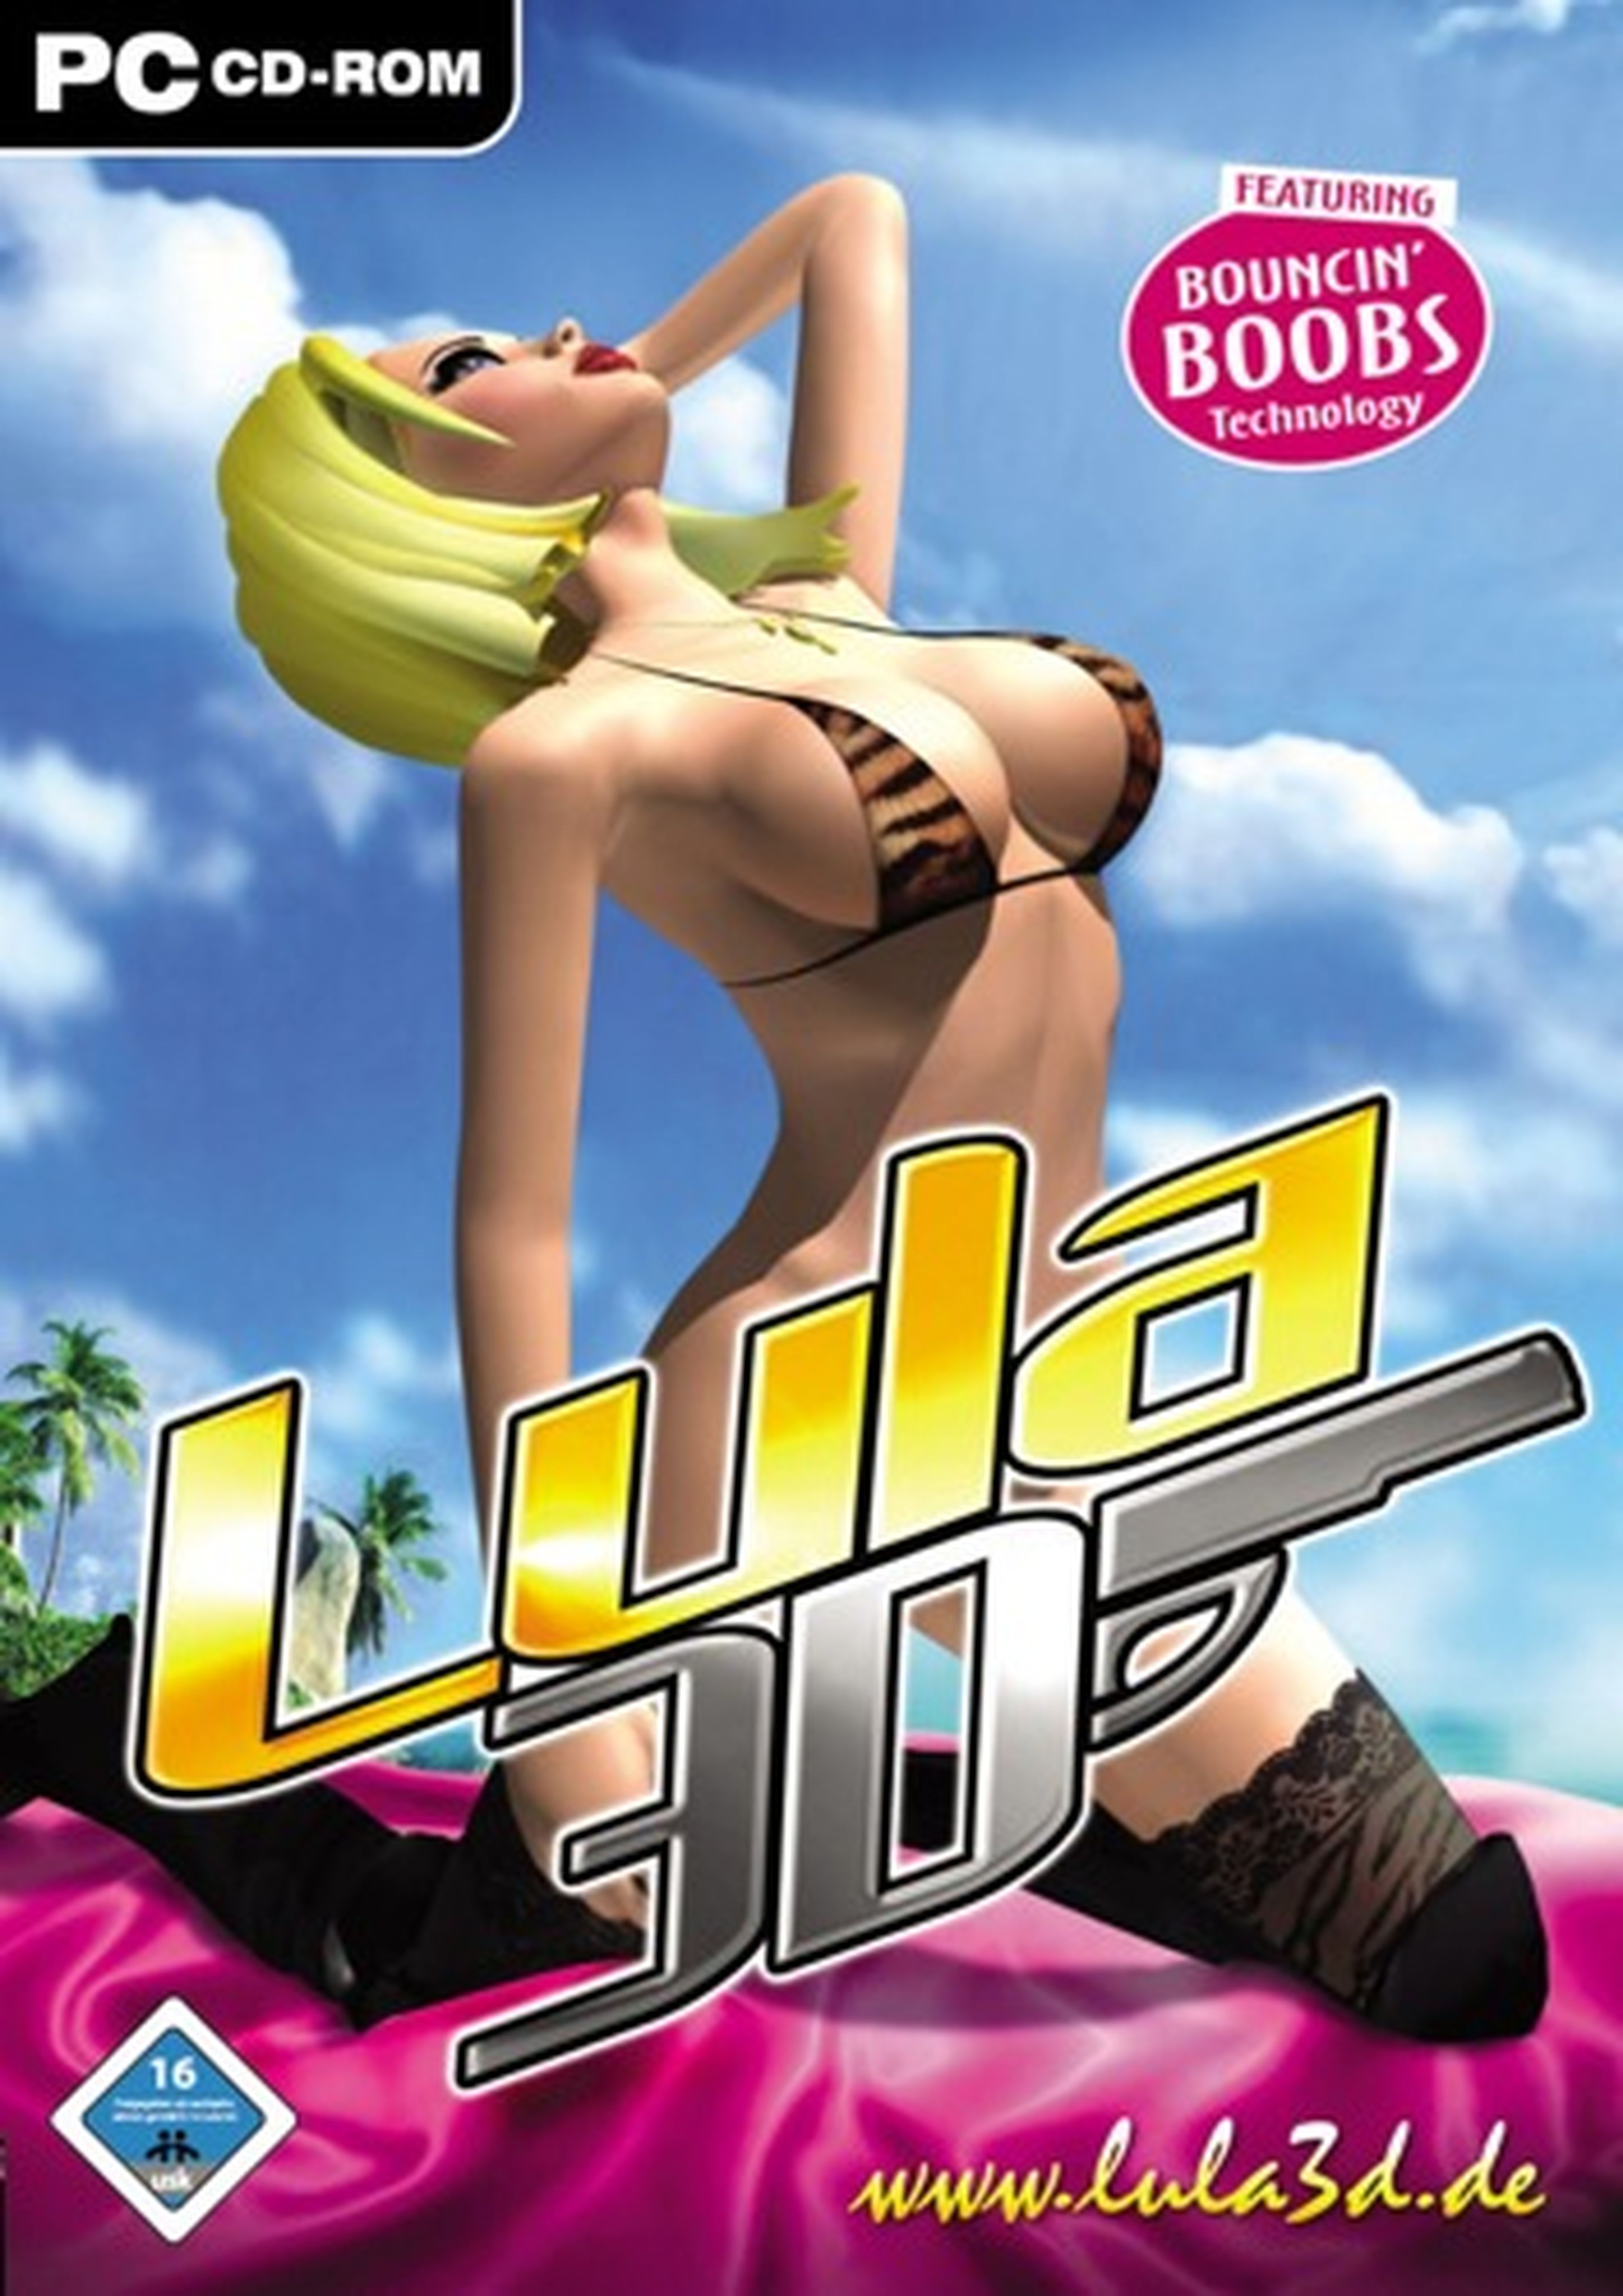 Игры 18 плюс плюс регистрации. Лула 3d. Lula 3d игра. Игры на ПК для девушек. Взрослые игры 18 на андроид.